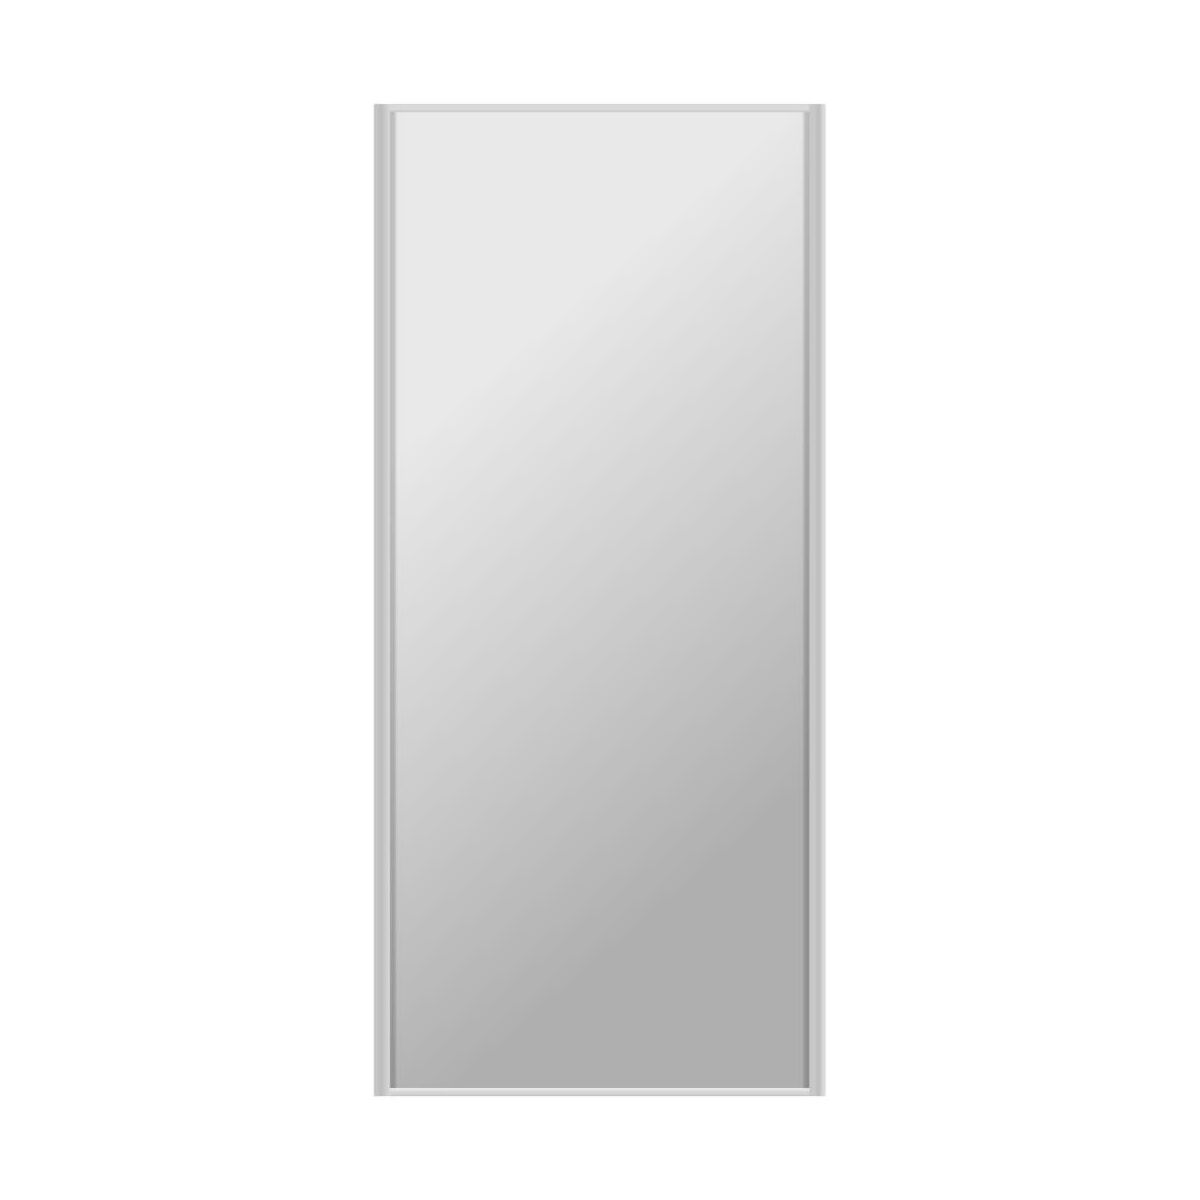 Drzwi przesuwne do szafy 98.7 cm z lustrem rama srebrna Spaceo